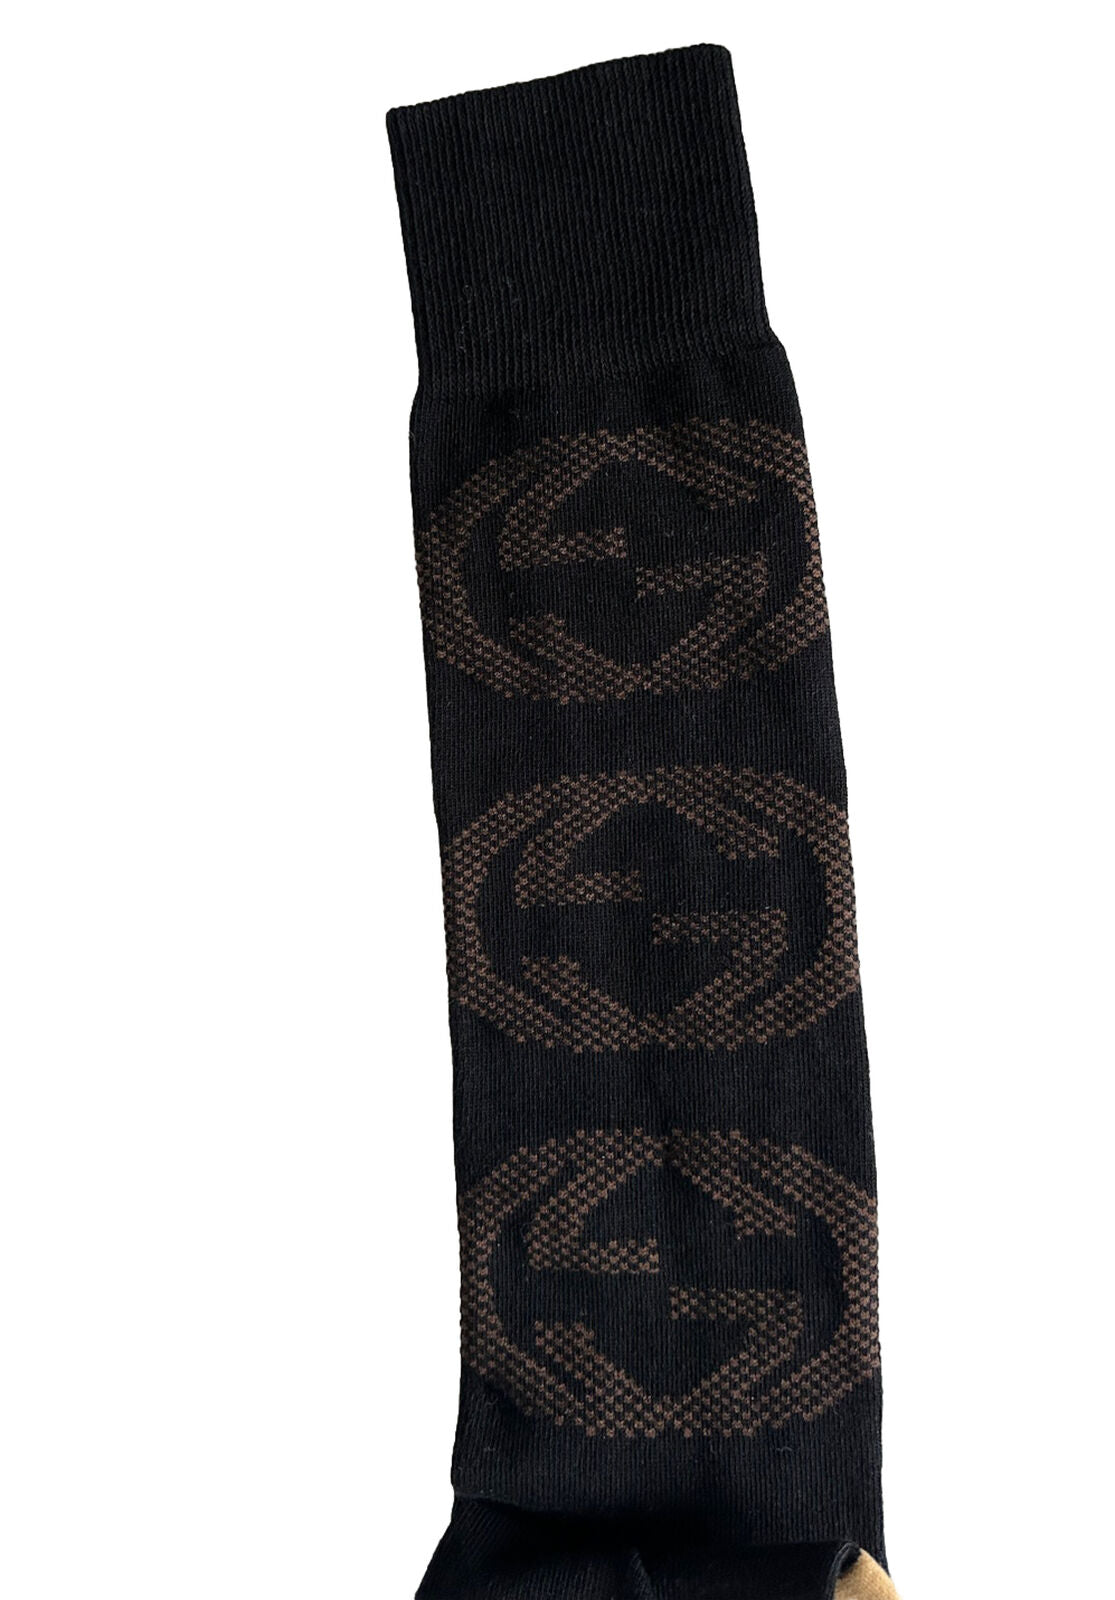 Носки NWT Gucci GG черные/бежевые, размер M (24–26 см), производство Италия 675854 